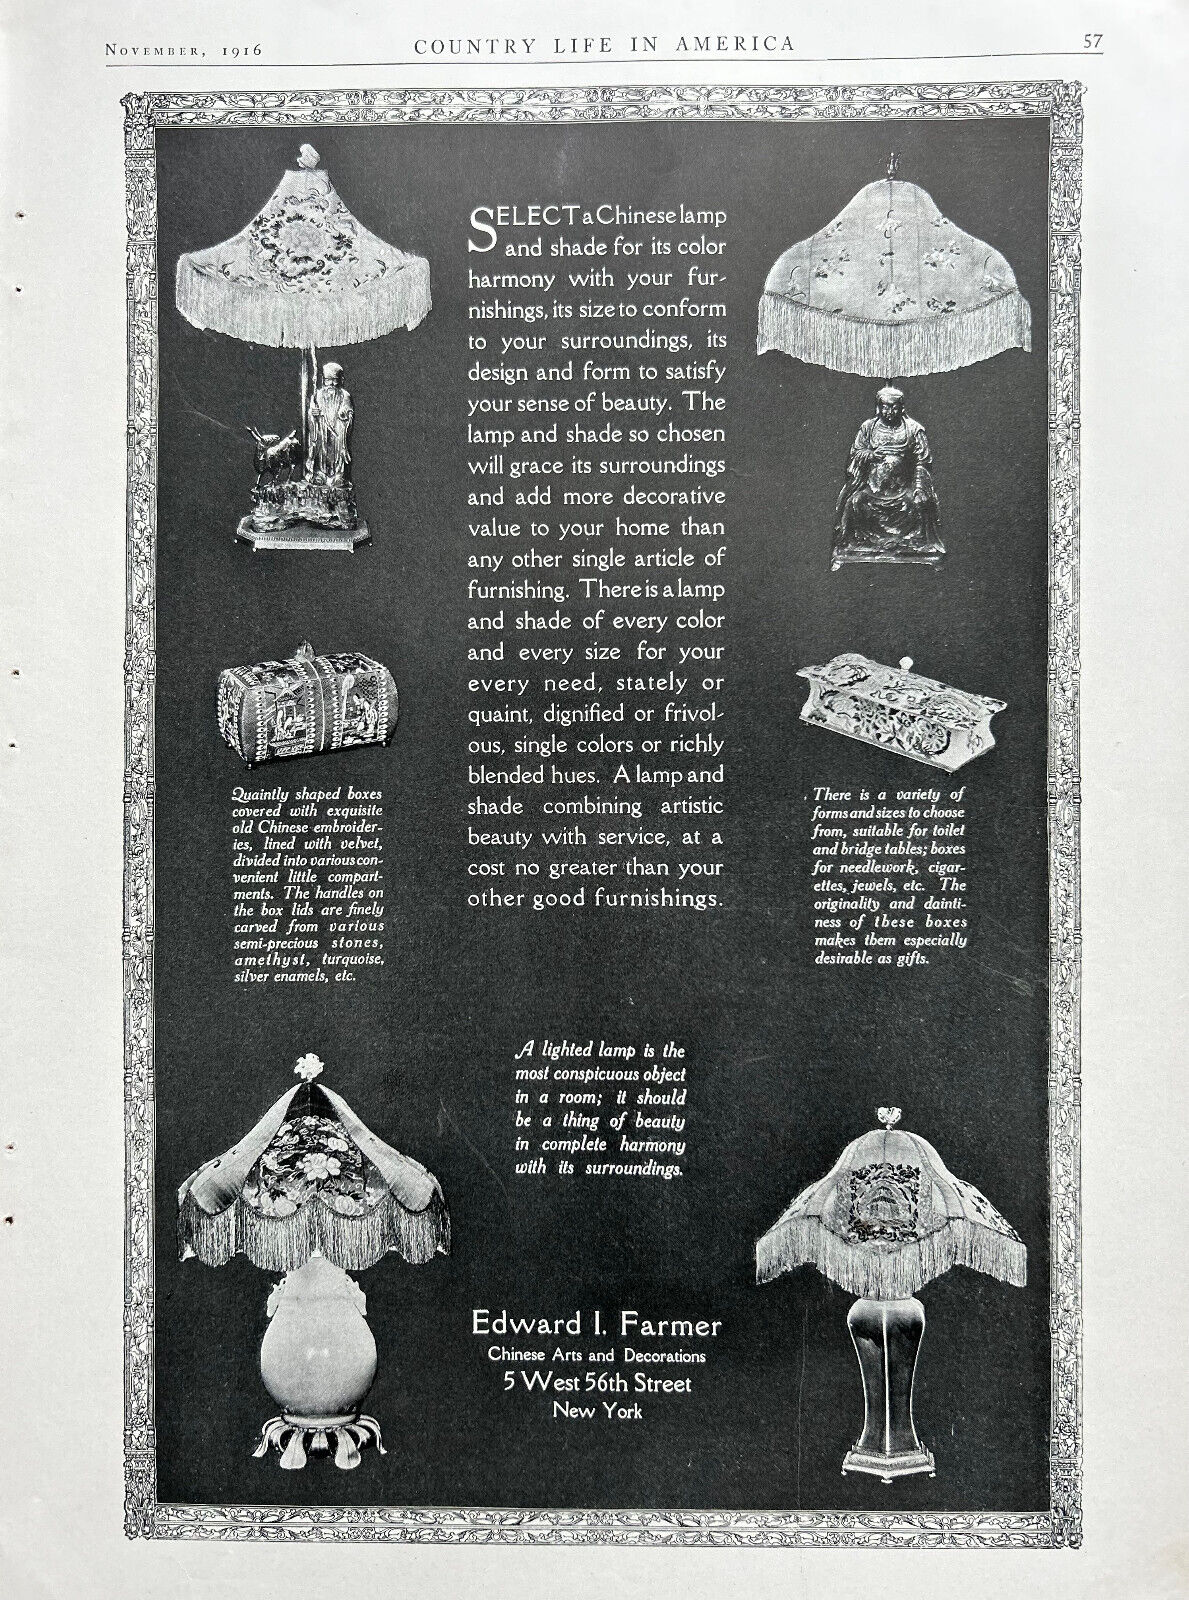 Edward I. Farmer Ad 1916, NY,NY, Chinese Arts, Lamps & Shades